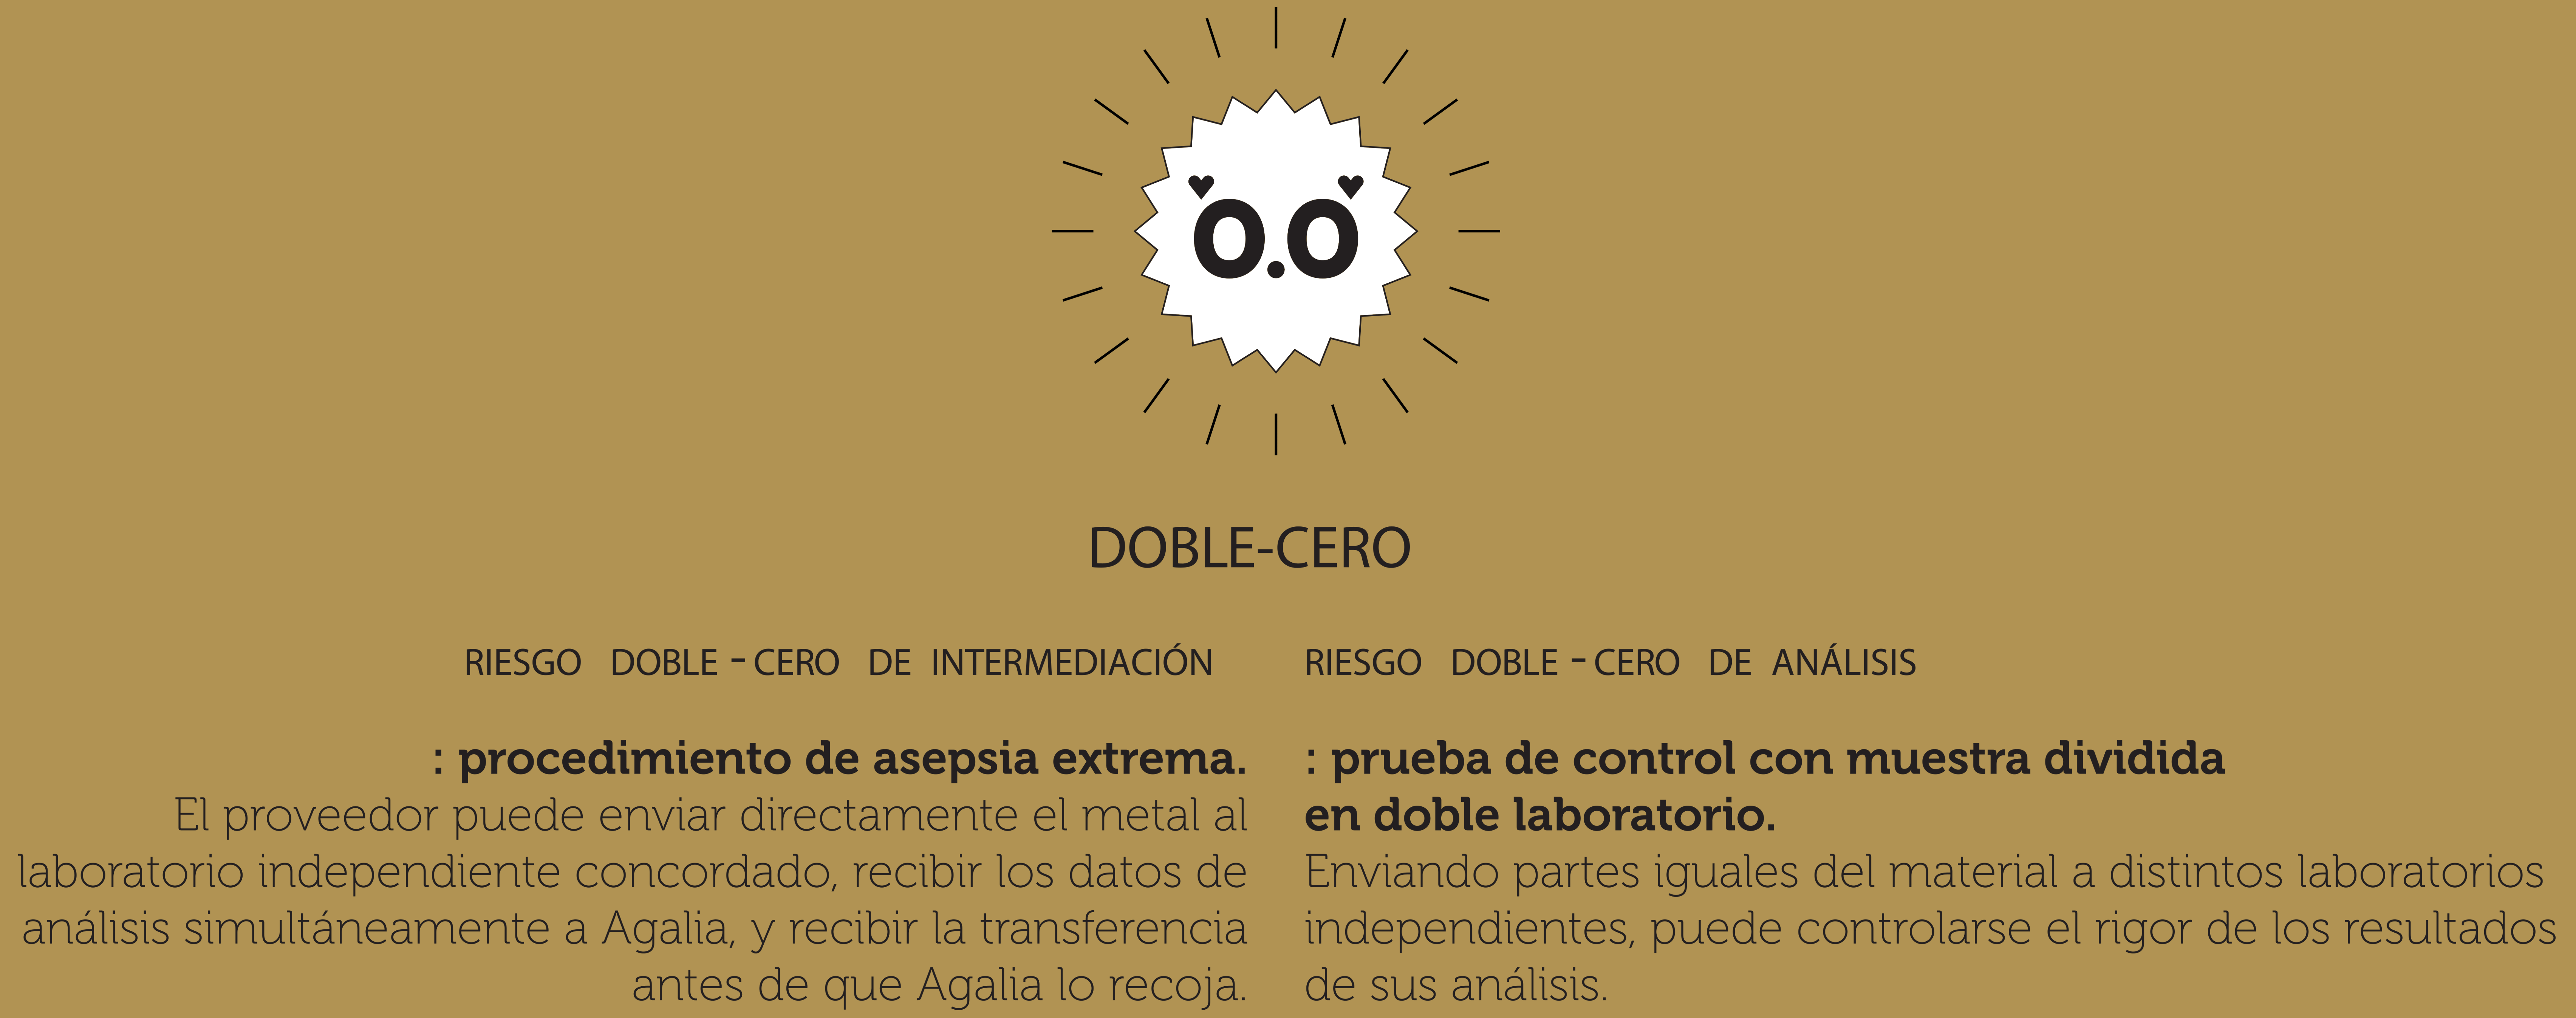 Doble-Cero